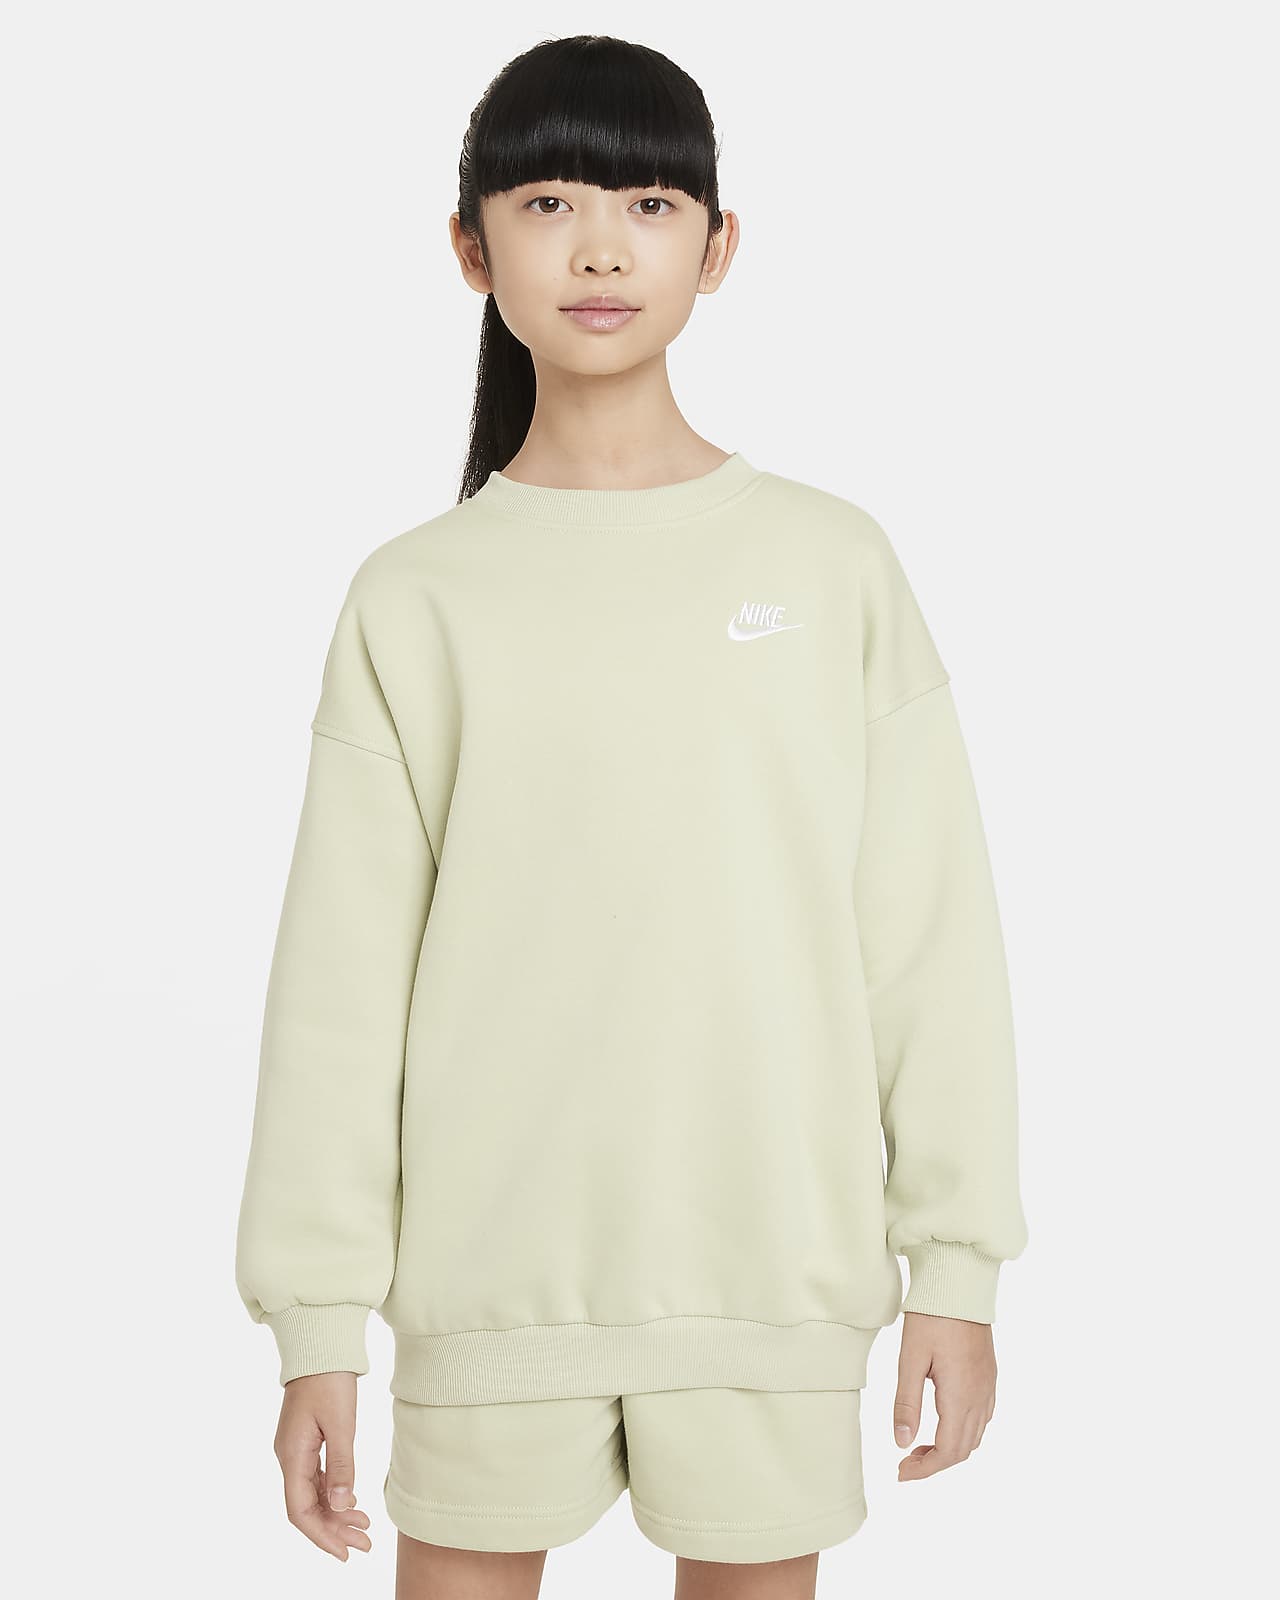 Sweatshirt folgada Nike Sportswear Club Fleece Júnior (Rapariga)